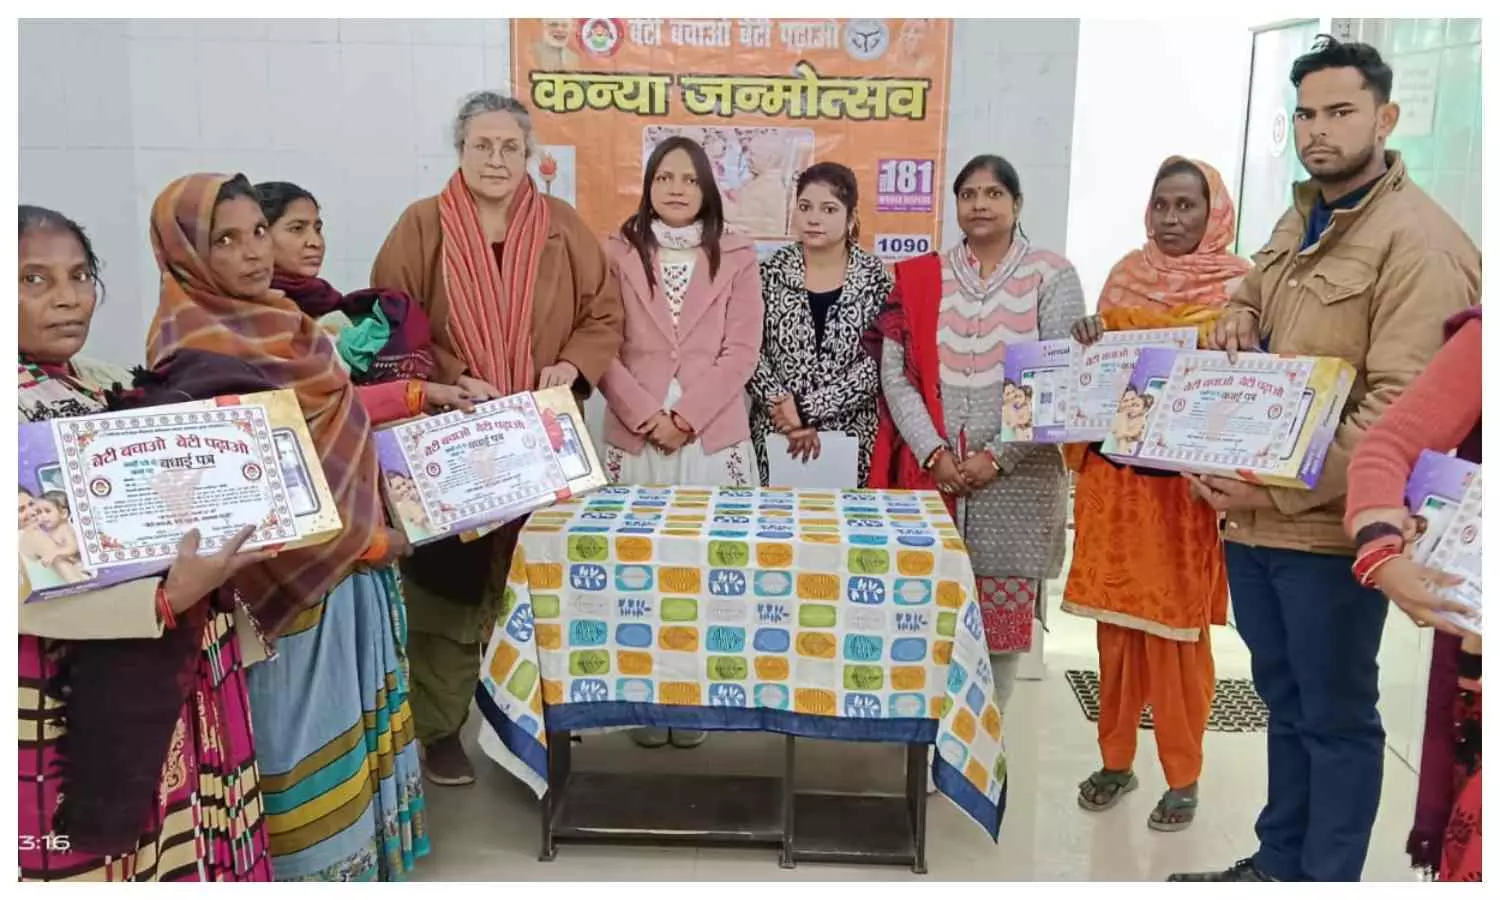 Lakhimpur Kheri: हर्षोल्लास से मनाया गया कन्या जन्मोत्सव, समझाया बेटियों का महत्व